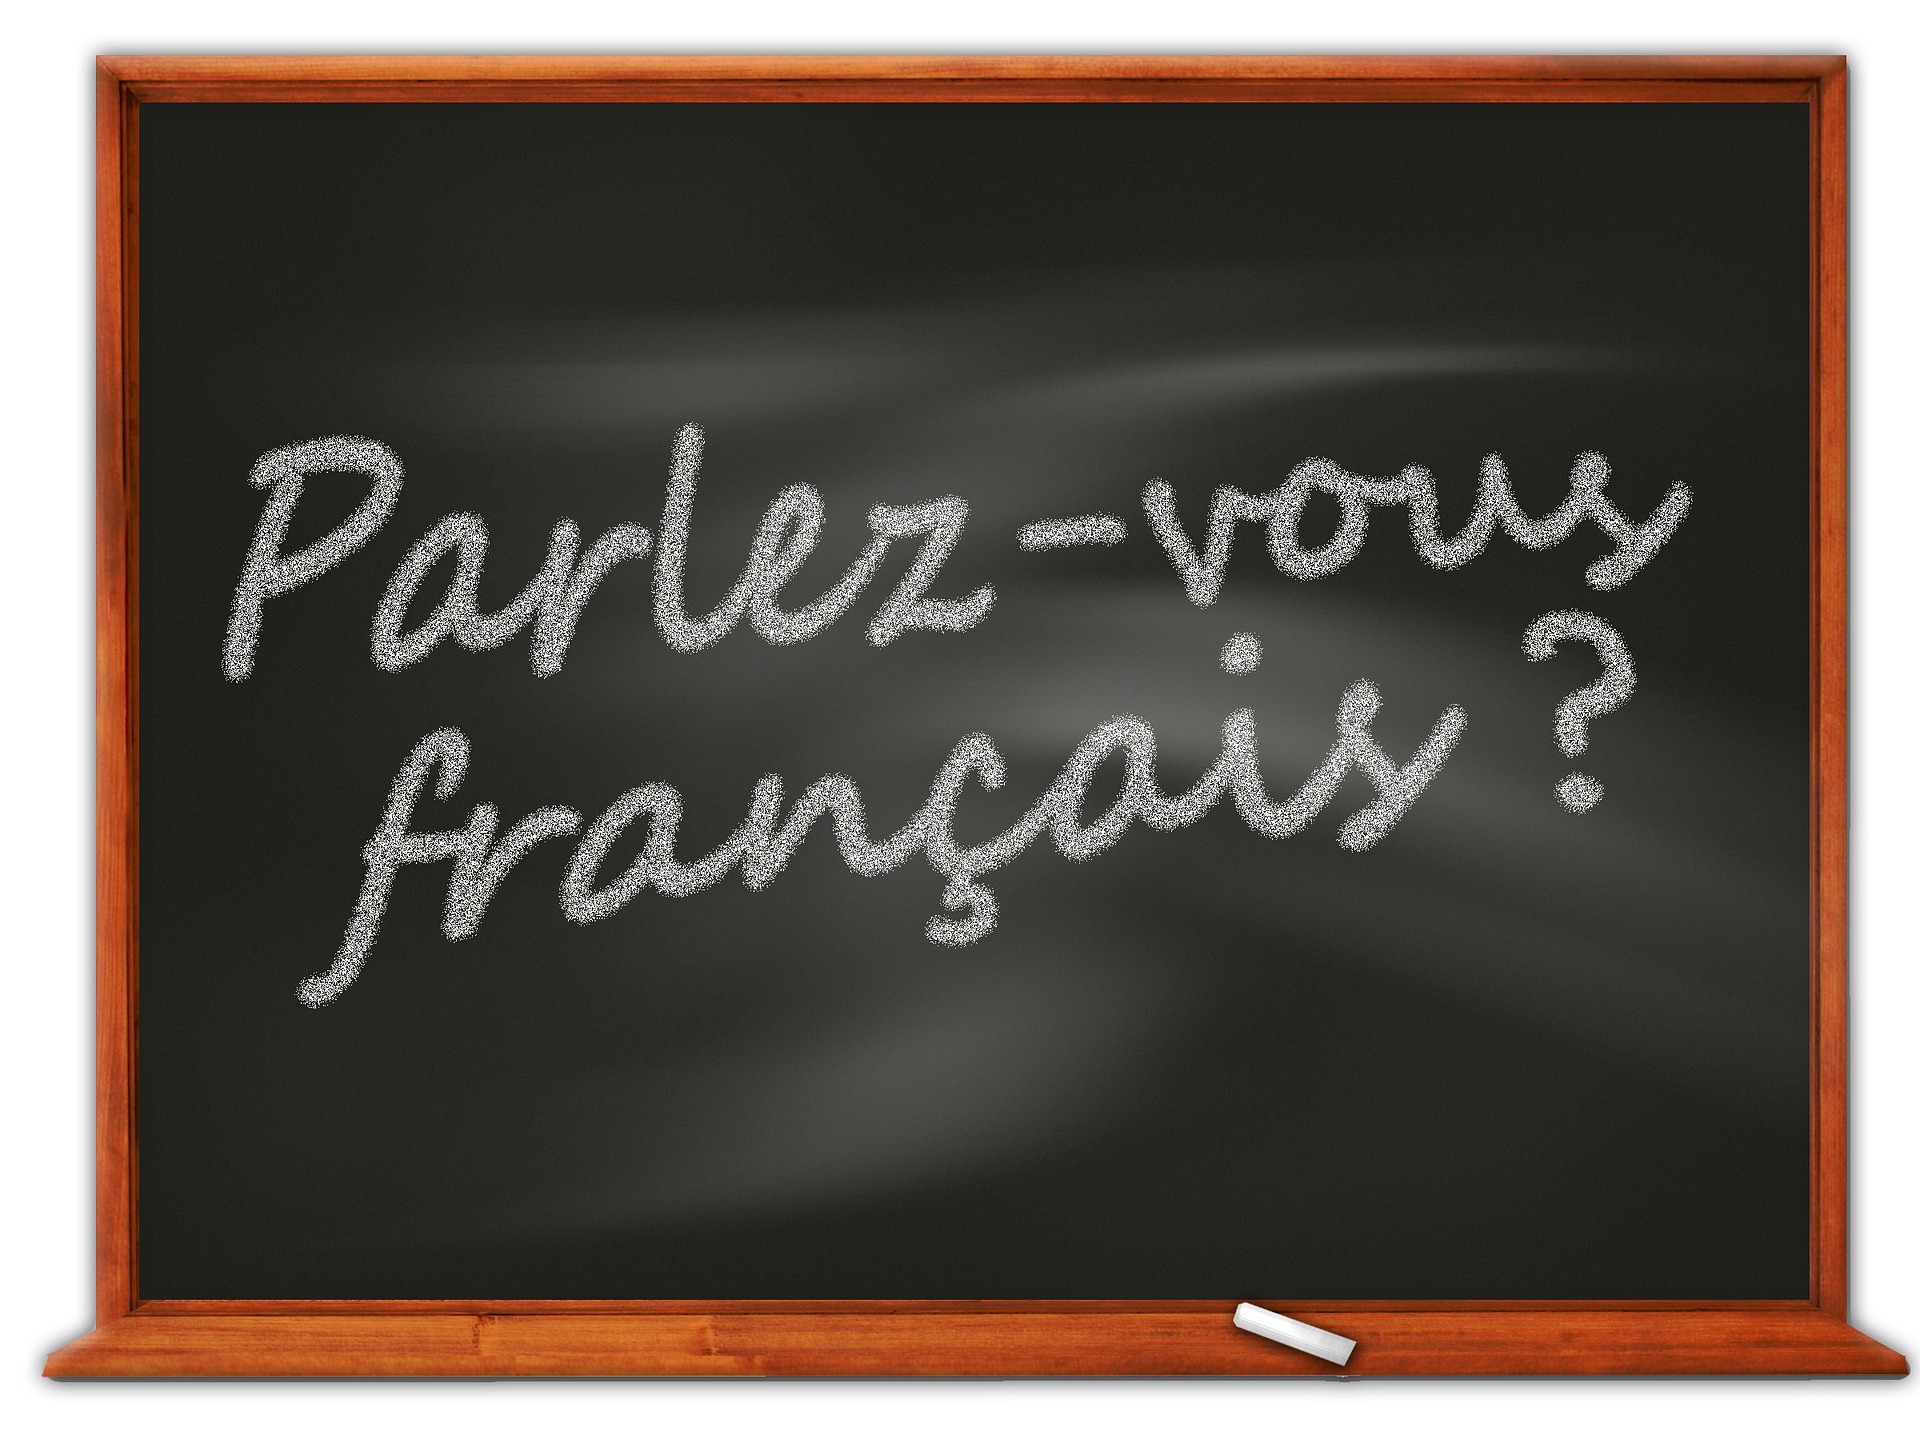 Parlez vous français